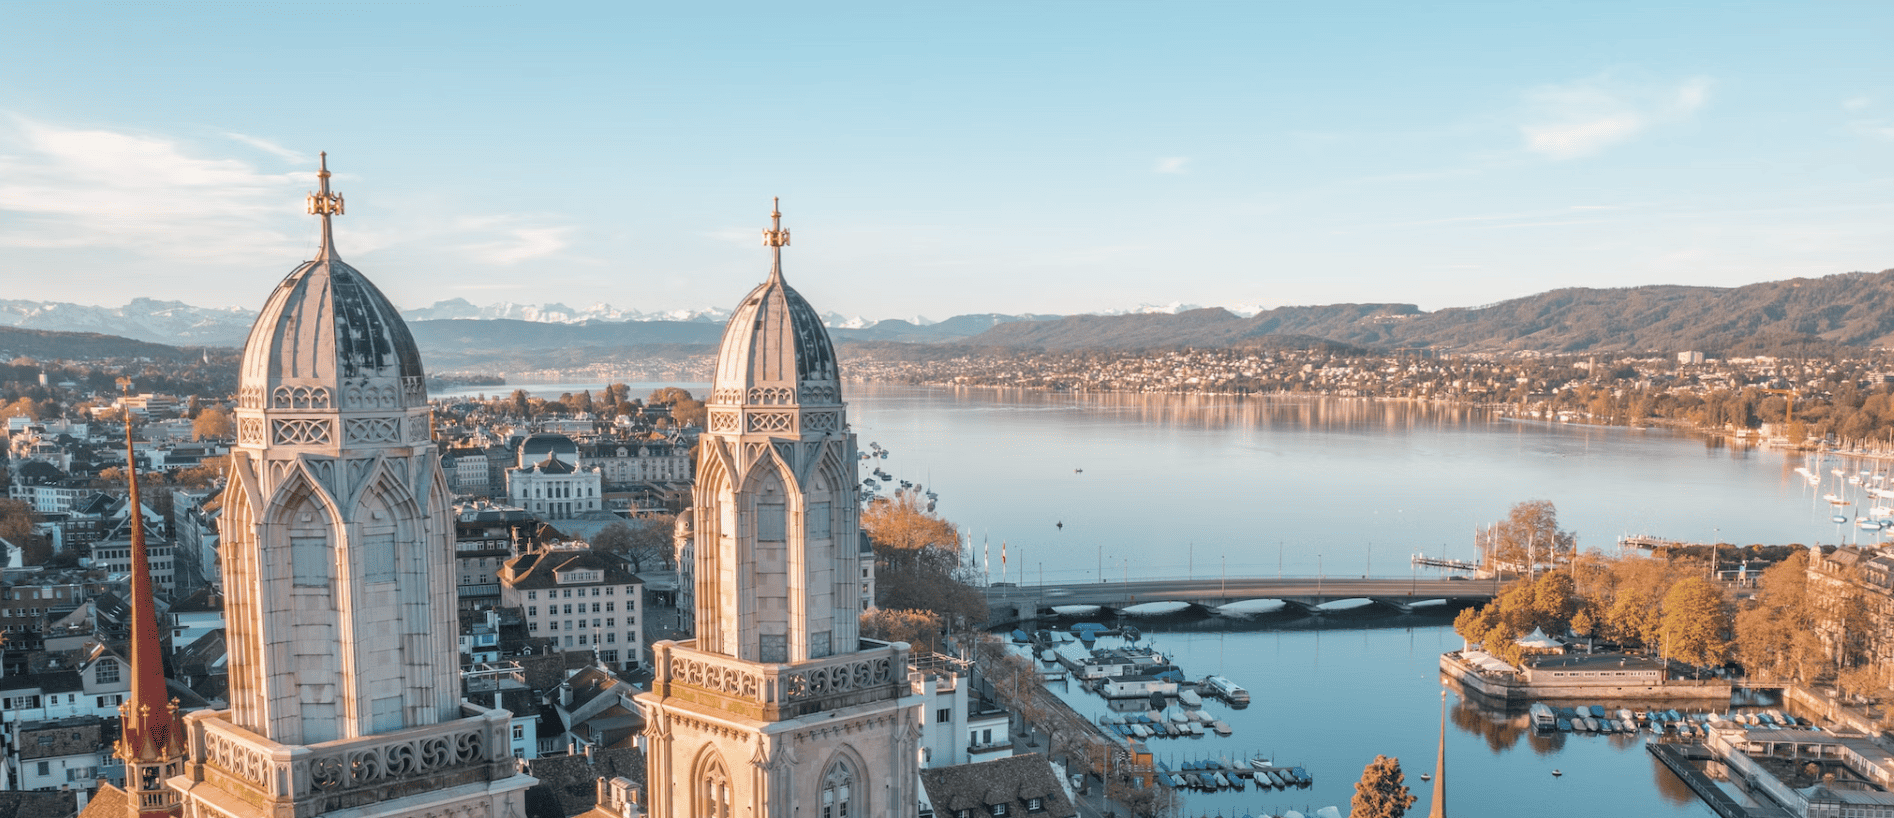 Liste der 3 größten Unternehmen in Zürich